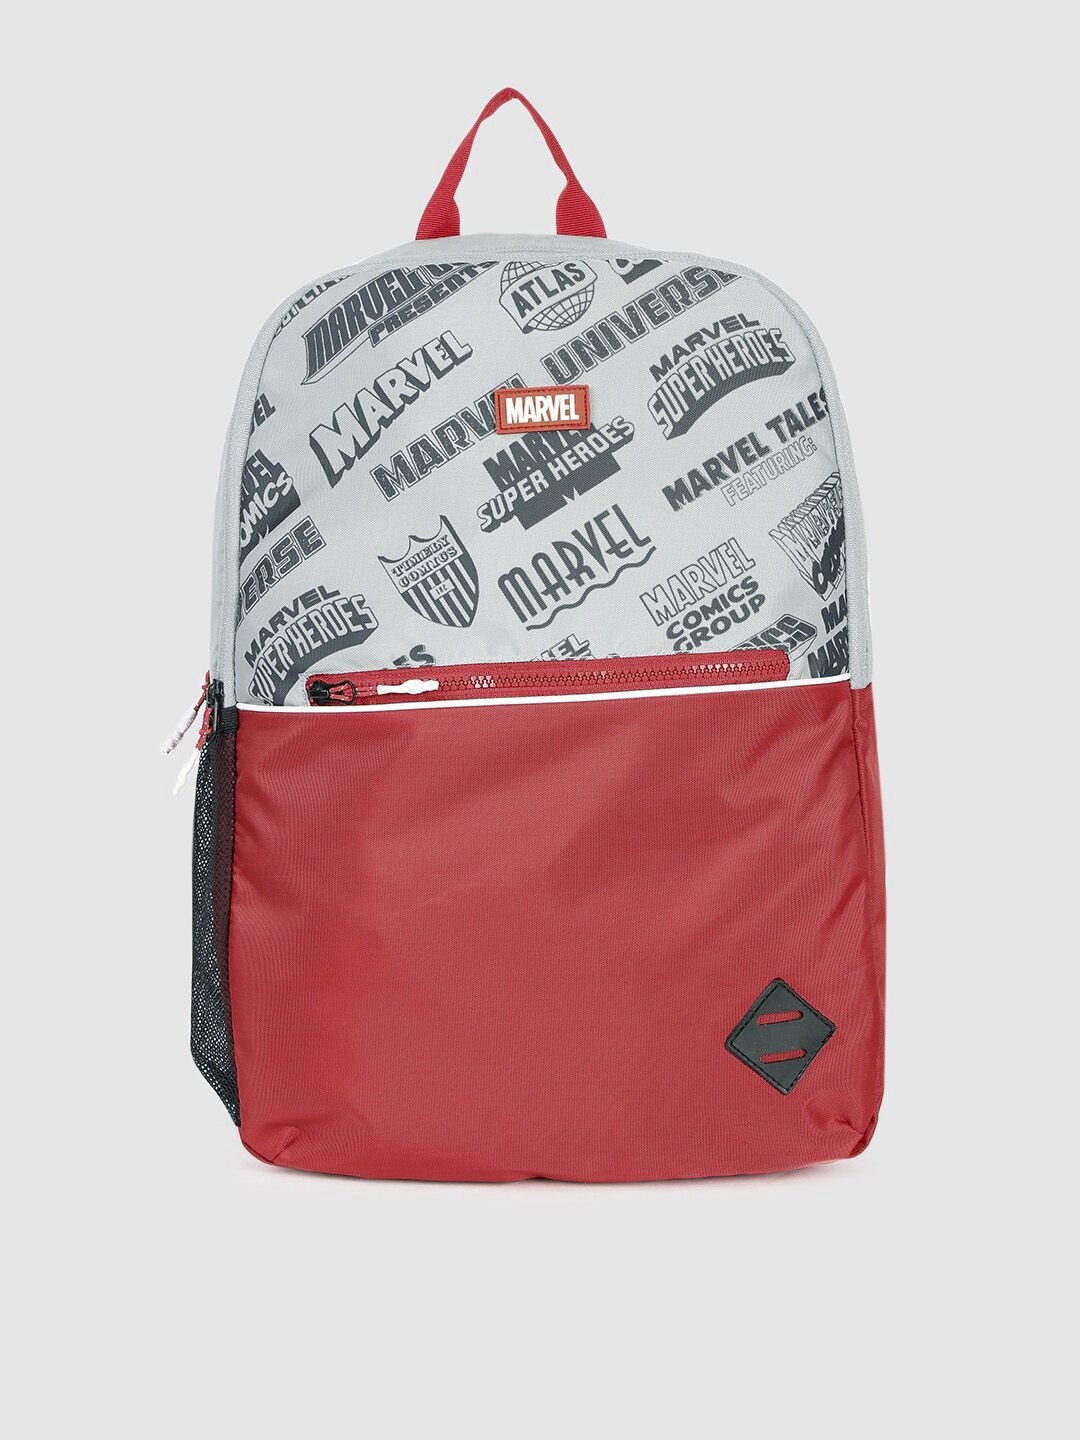 Kook N Keech Unisex White & Red Printed Backpack Price in India